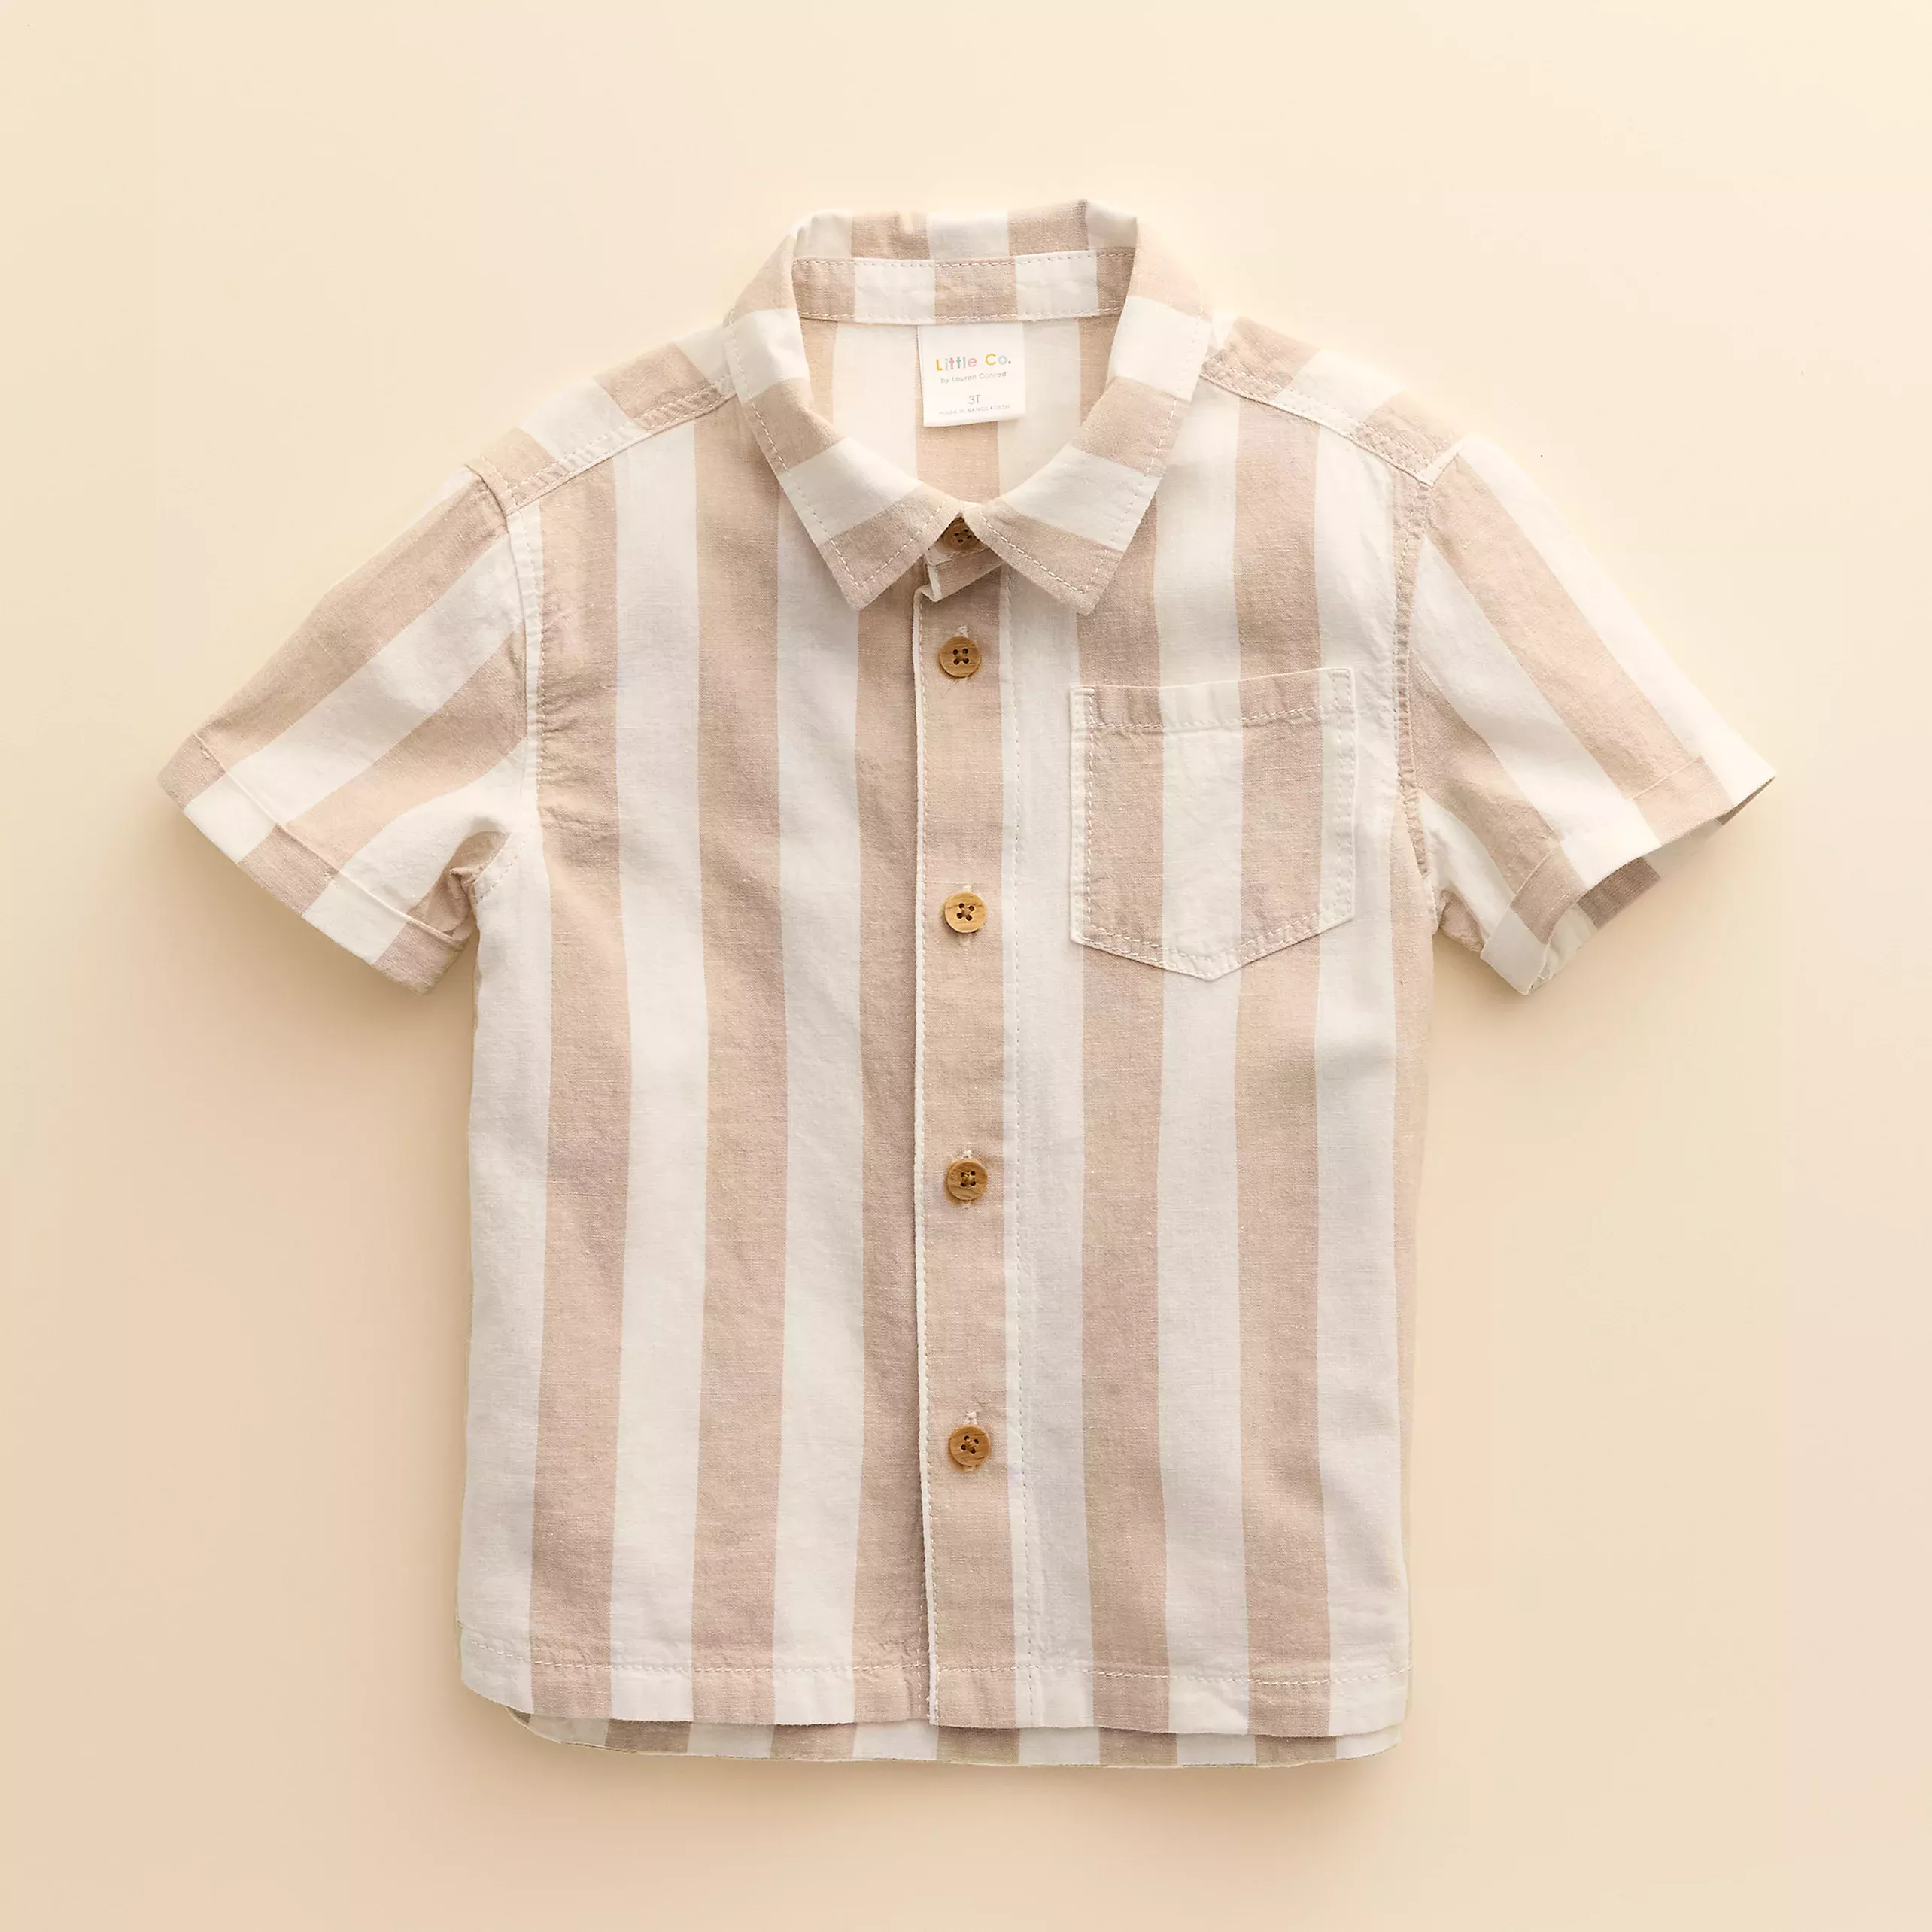 Kids 4-8 Little Co. by Lauren Conrad Button-Front Shirt